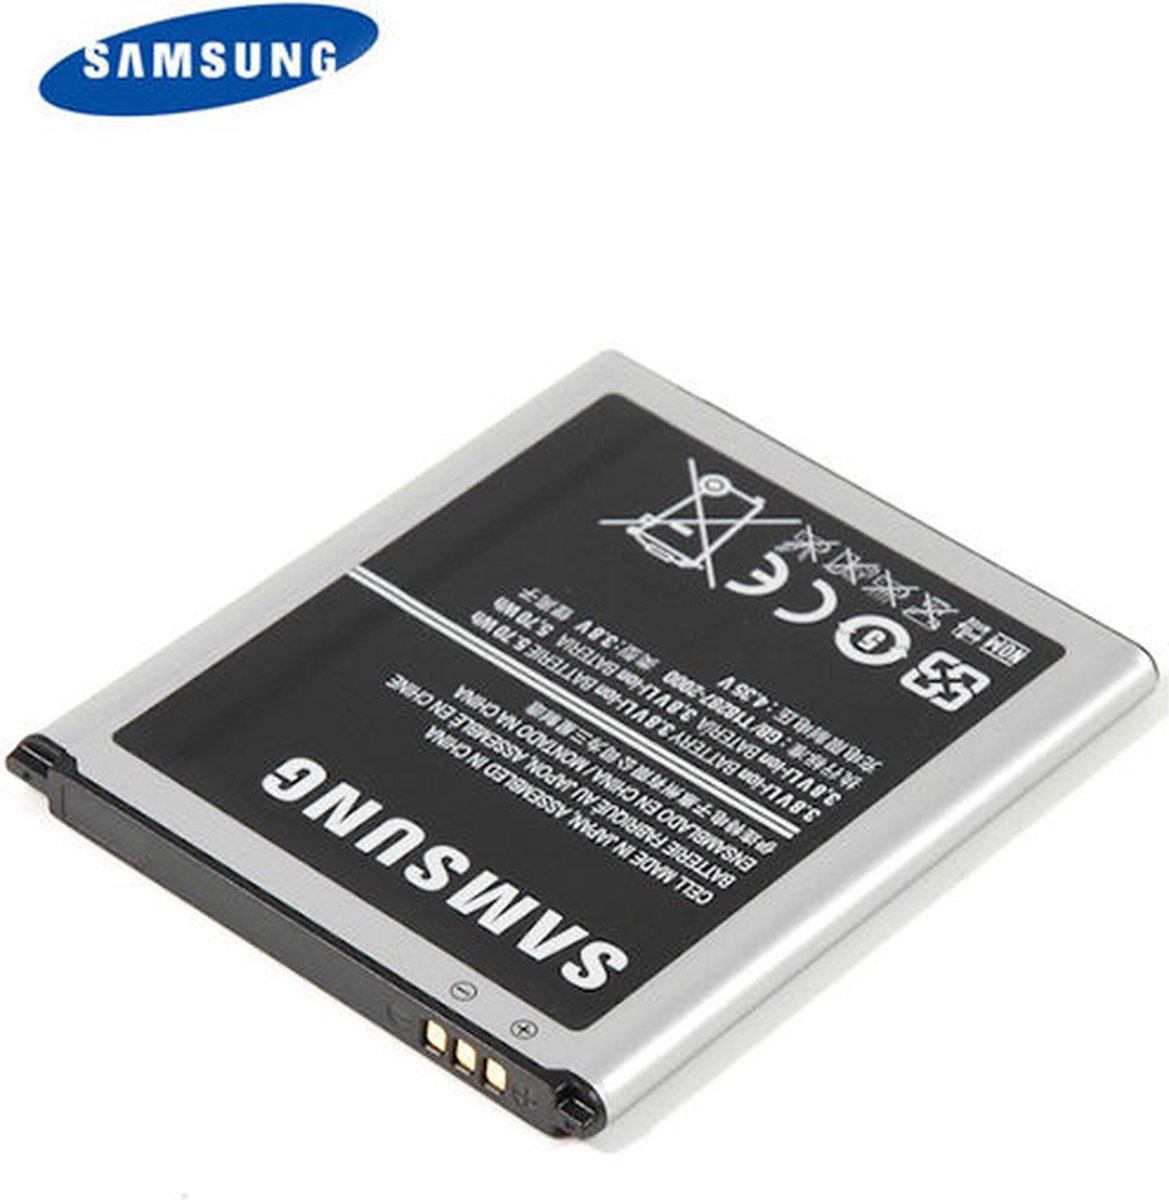 Samsung batterij voor Galaxy S3 mini I8190 | bol.com